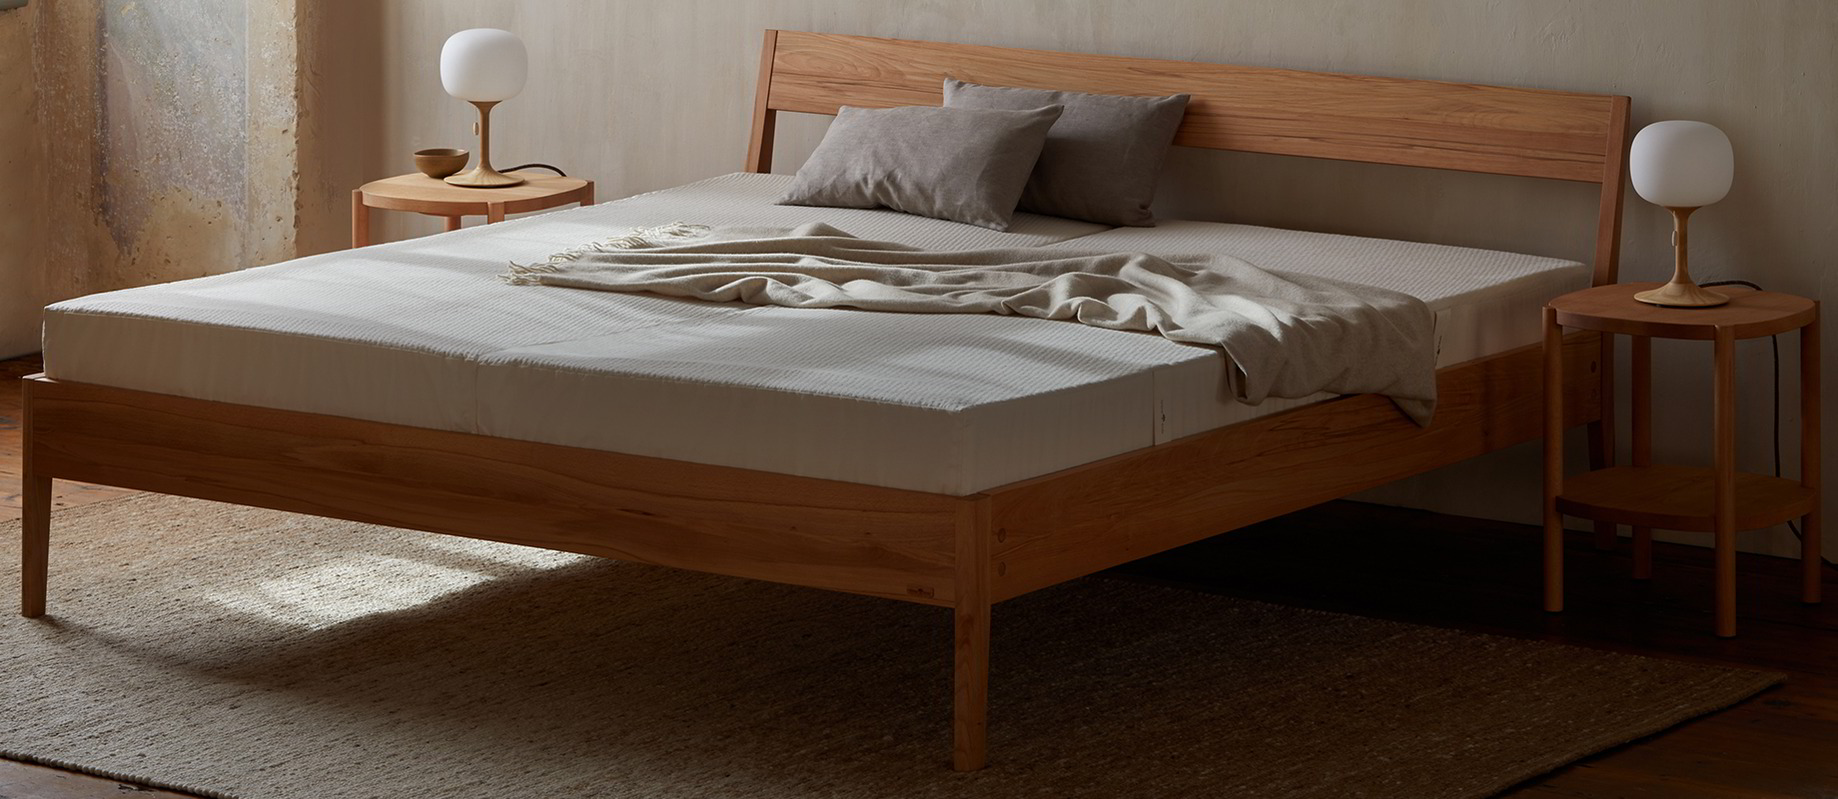 Ein Holzbett mit einer niedrigen Matratze